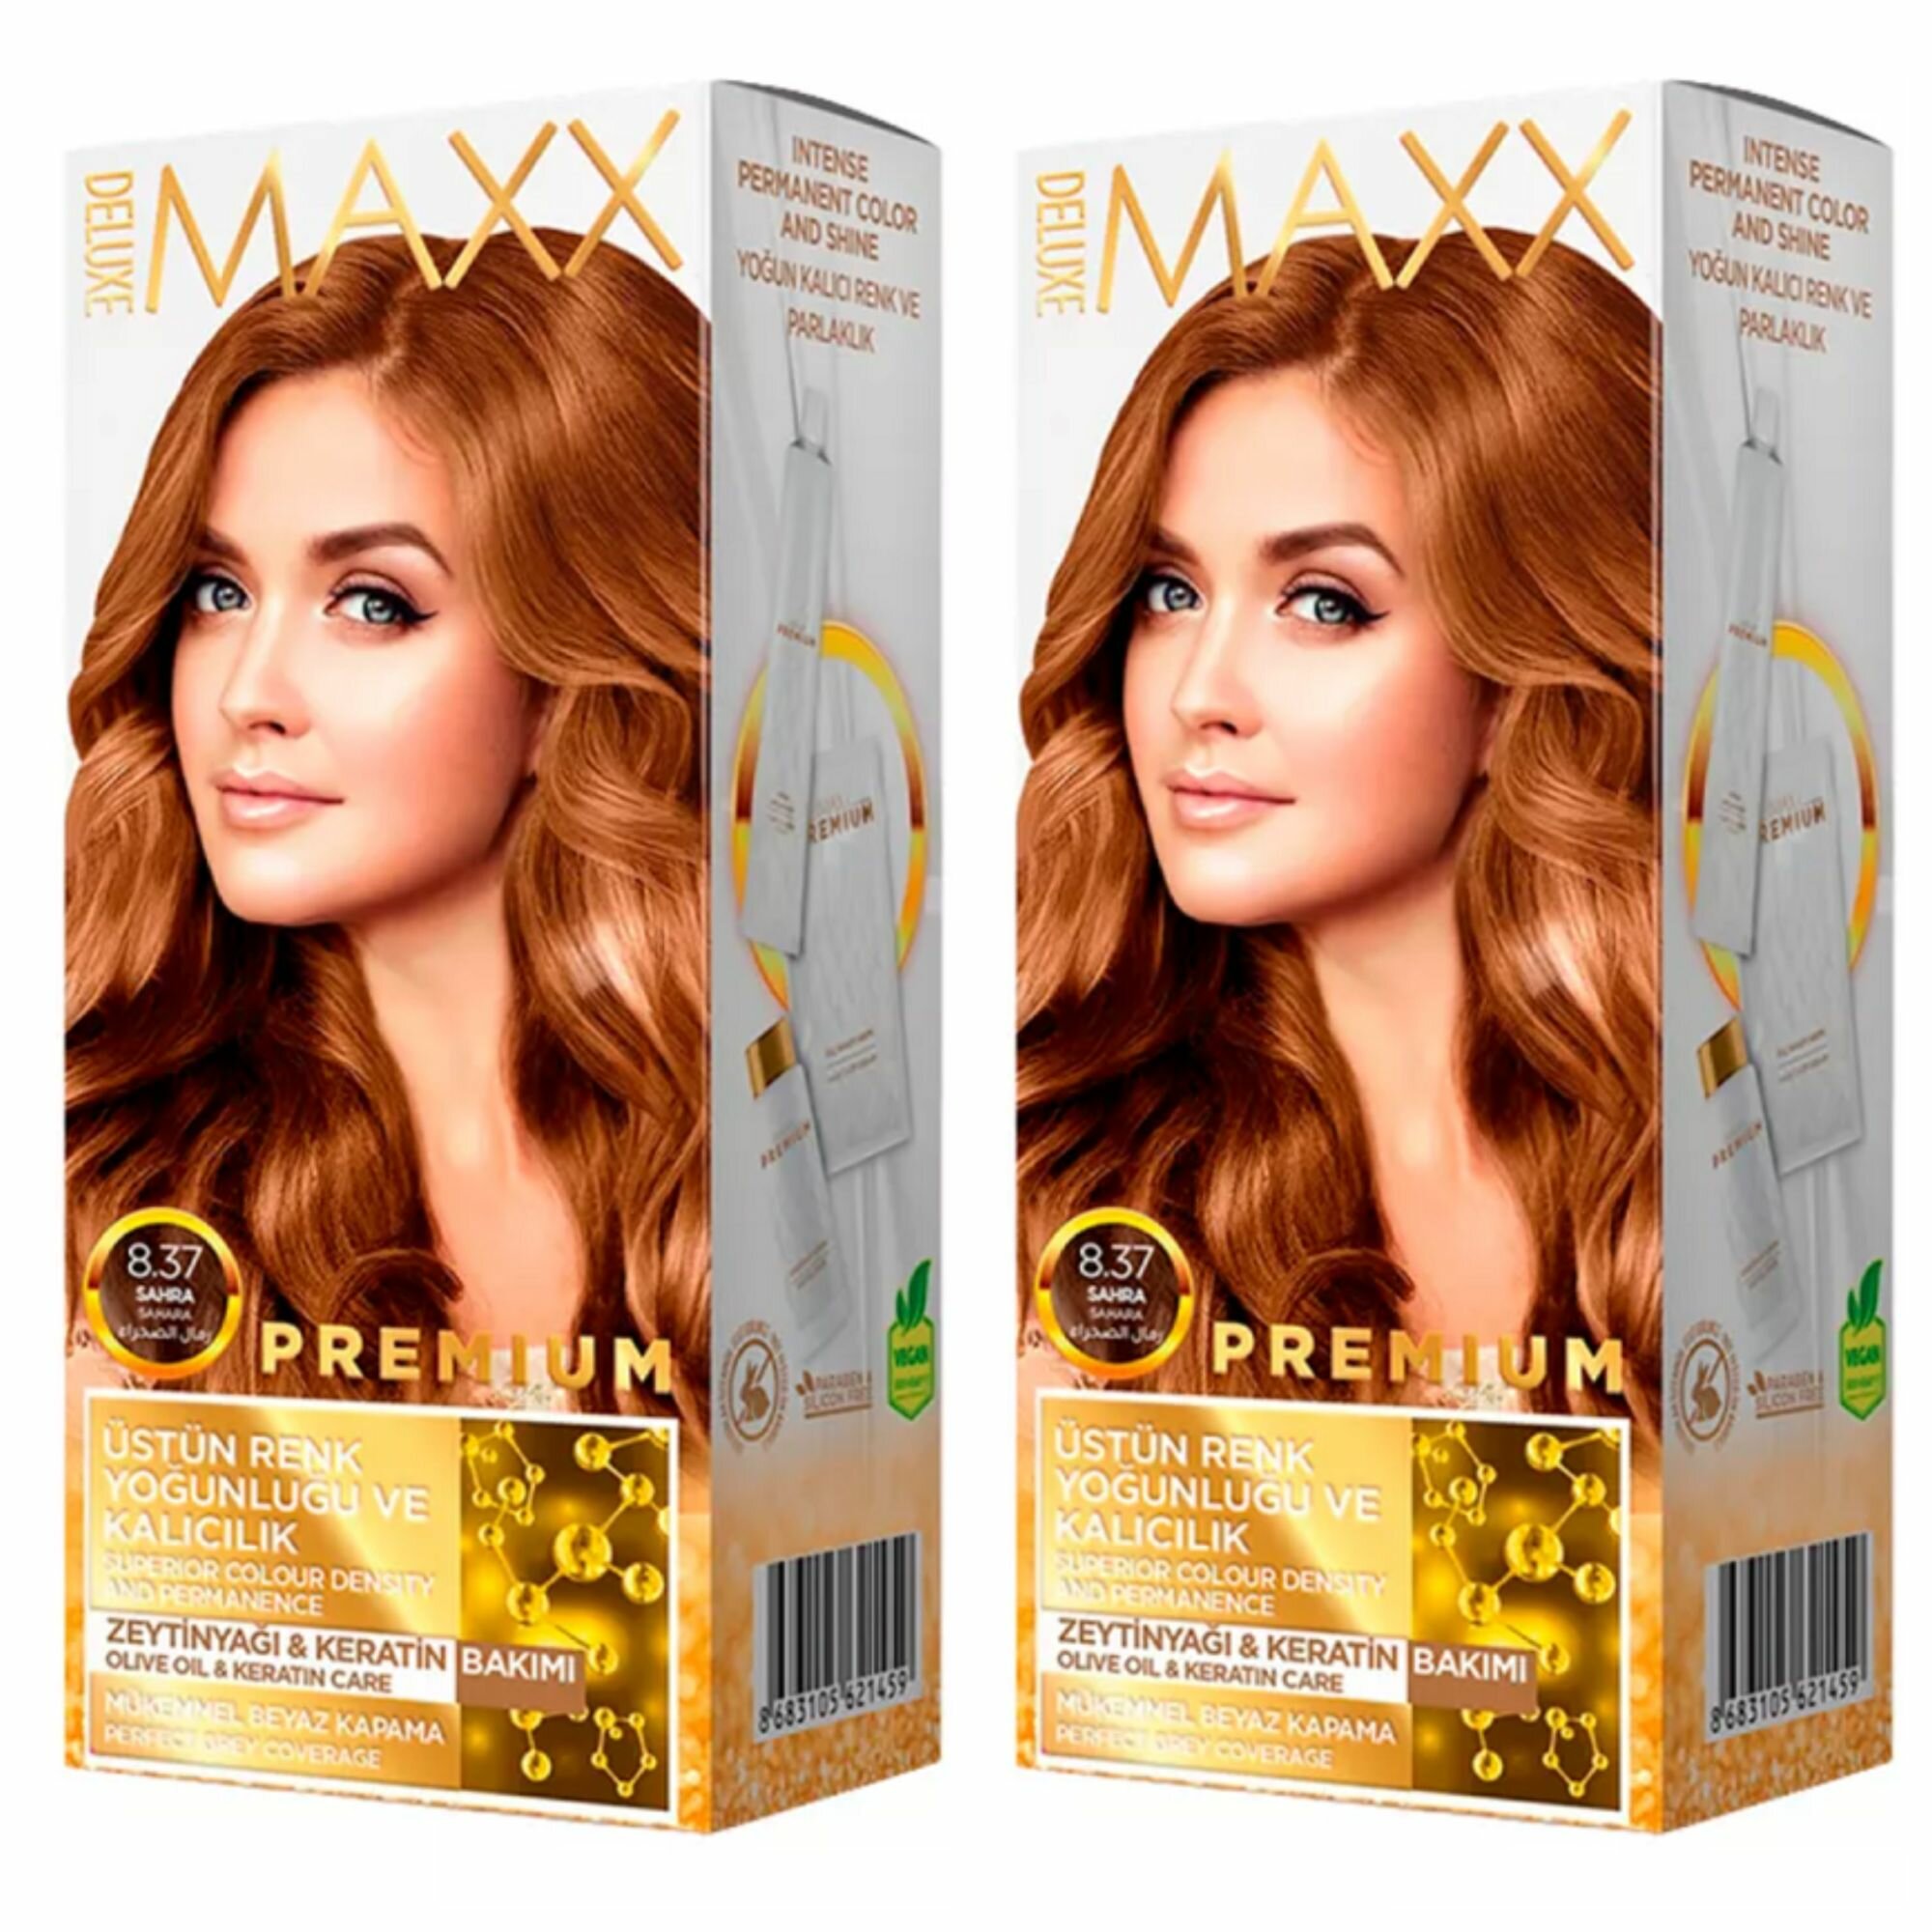 MAXX DELUXE Краска для волос Premium, тон 8.37 Песочный, 110 г, 2 уп